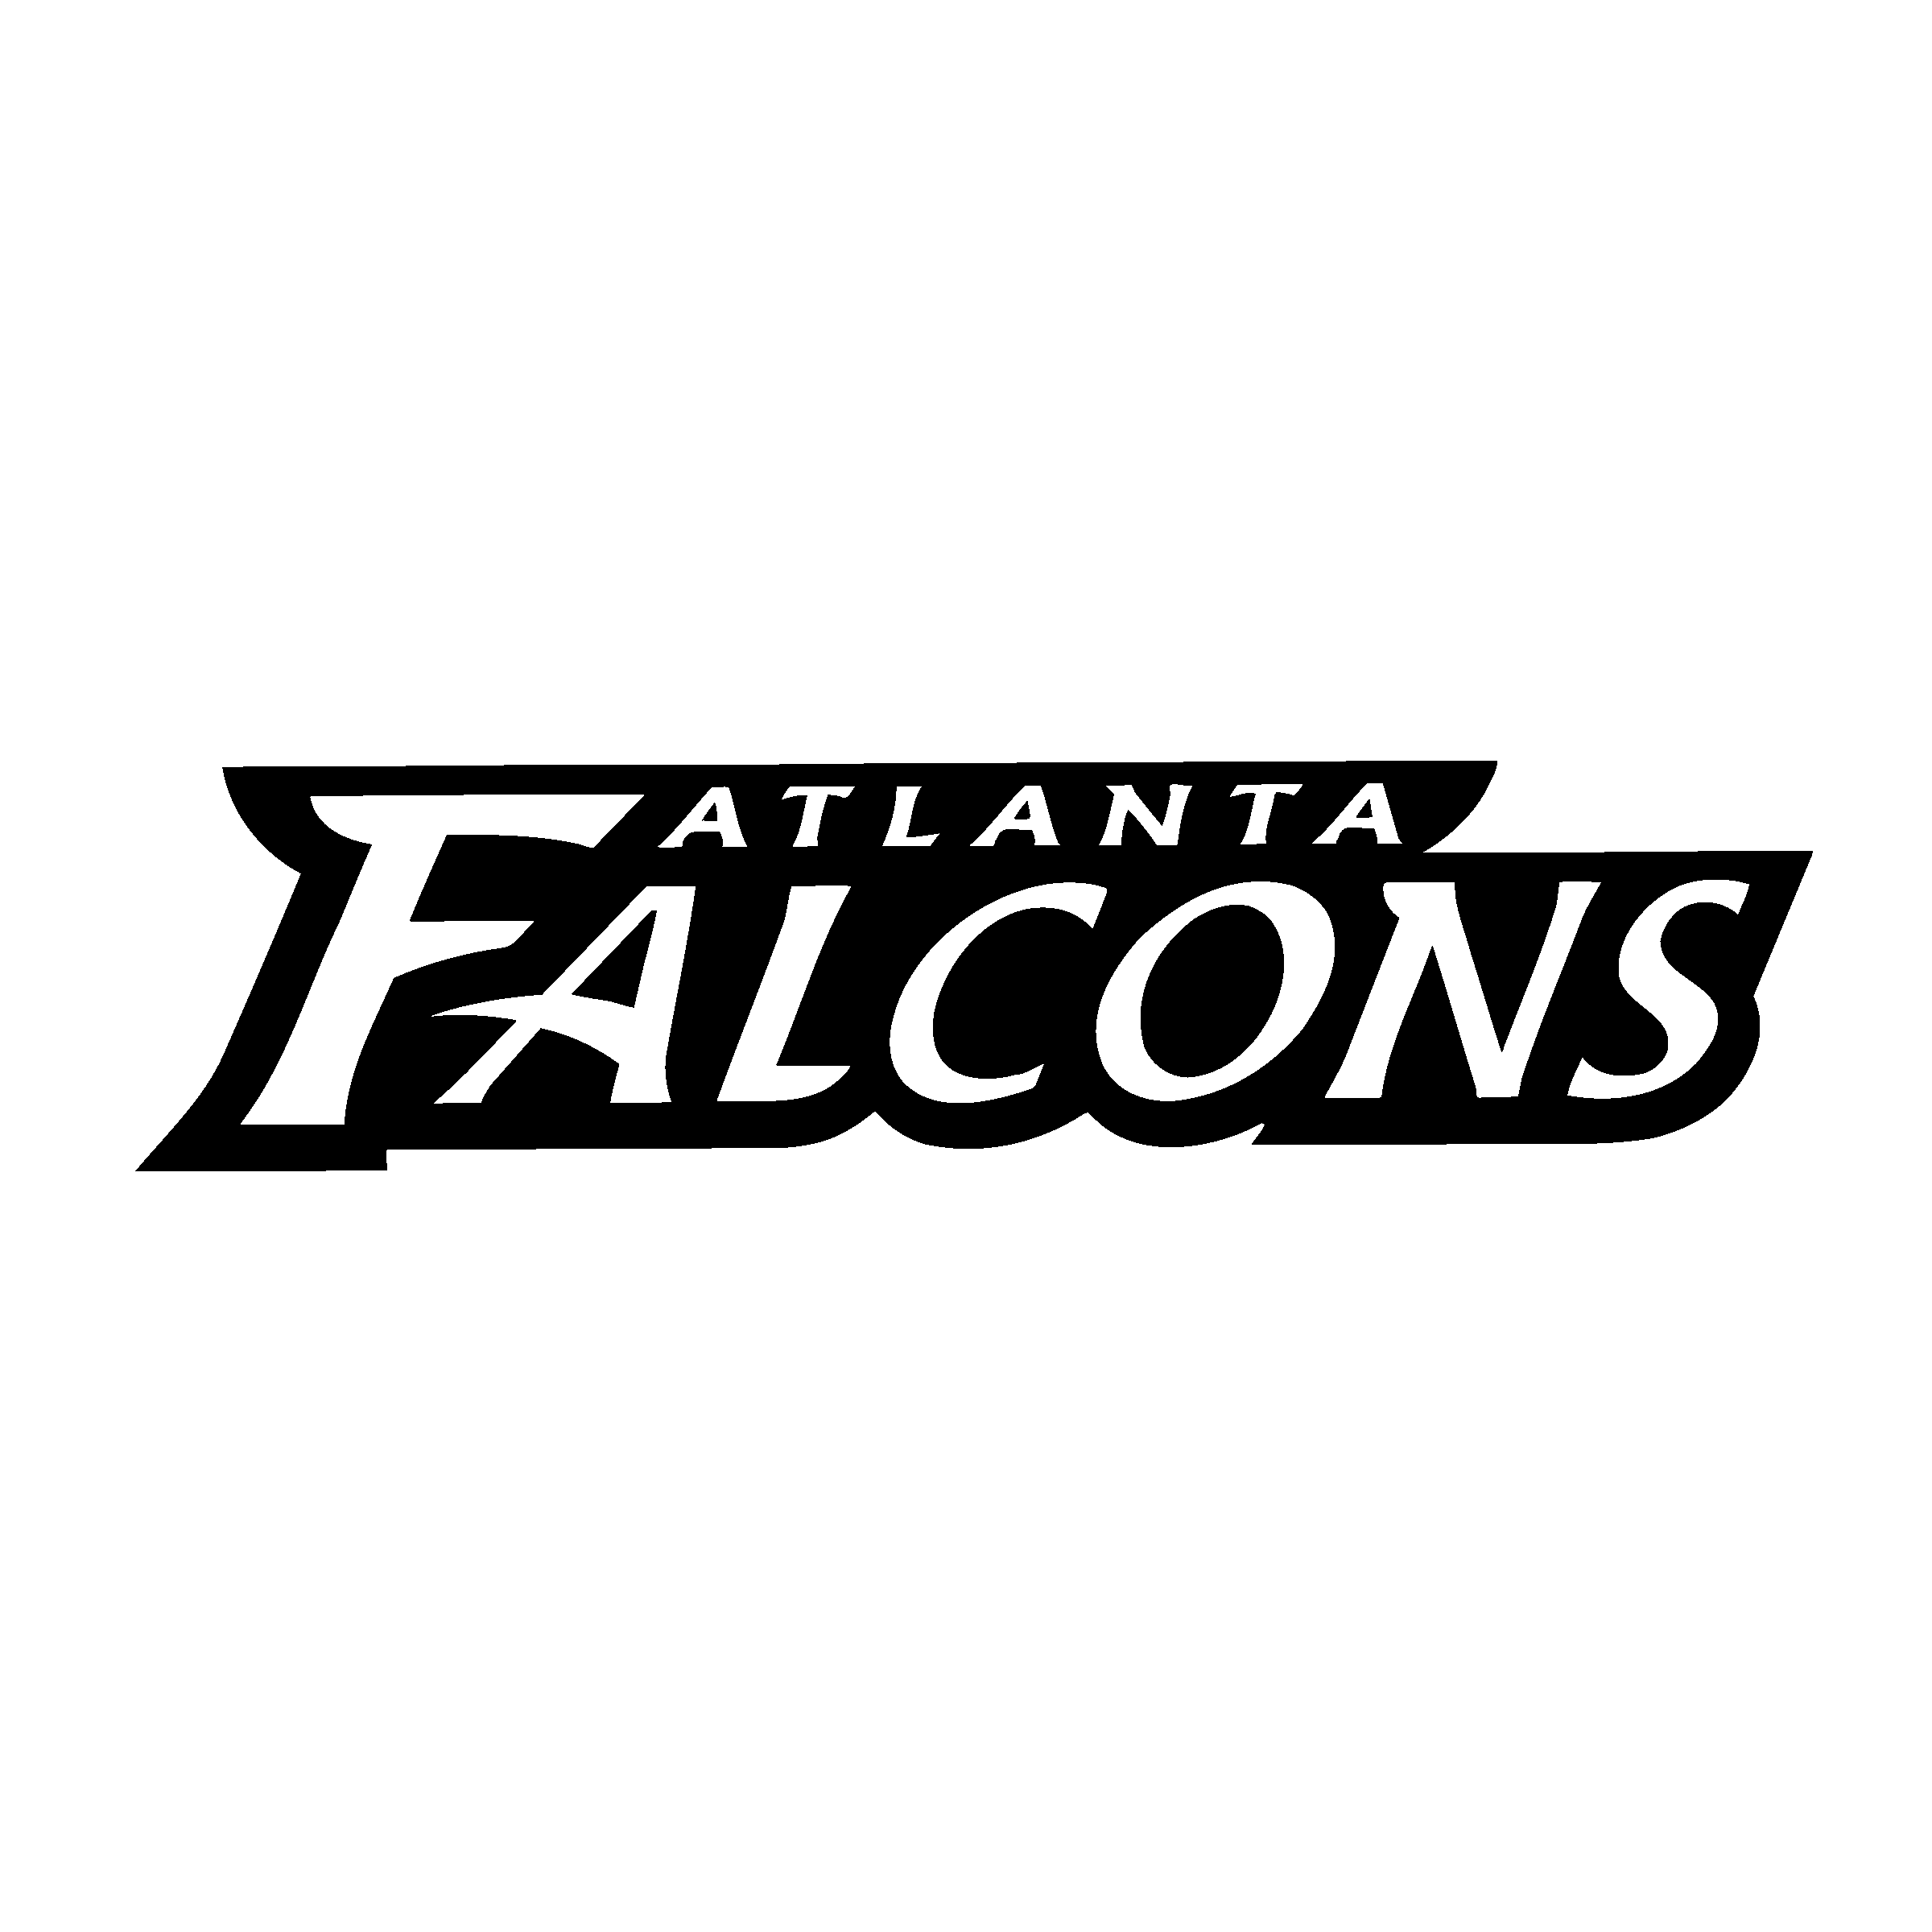 White Falcons Logo - Atlanta Falcons Logo SVG Vector & PNG Transparent - Vector Logo Supply